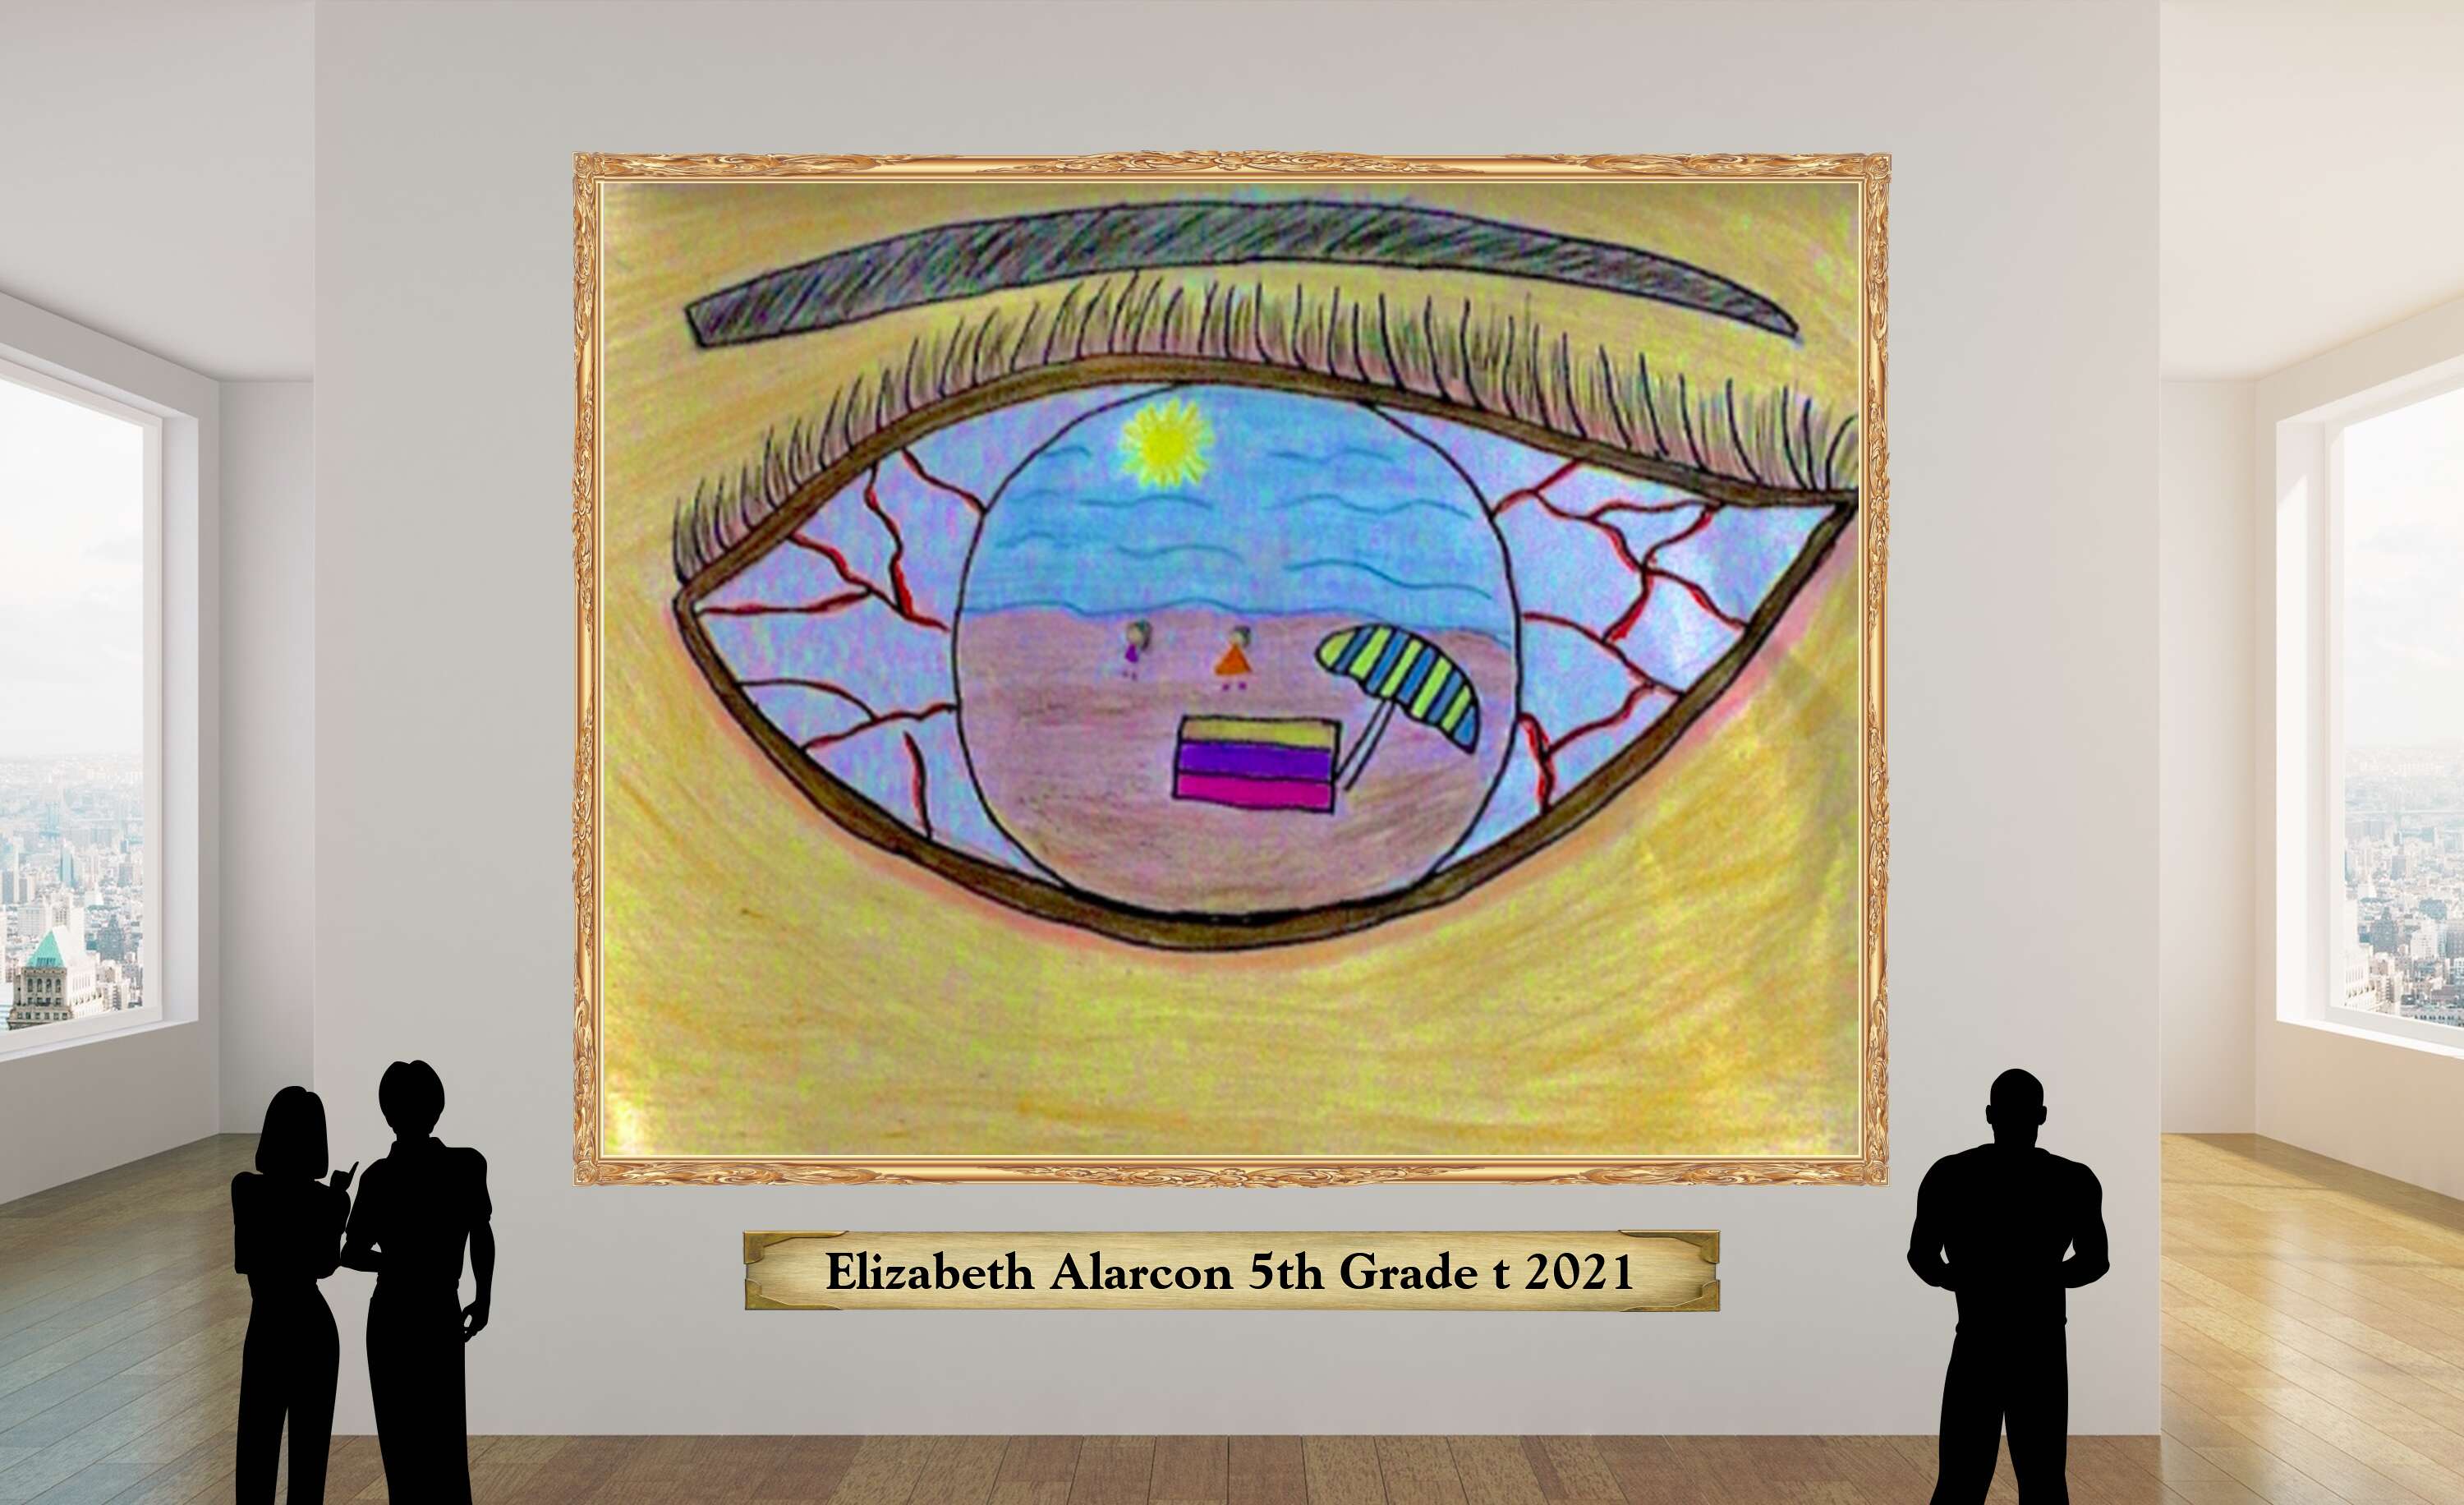 Elizabeth Alarcon 5th Grade t 2021